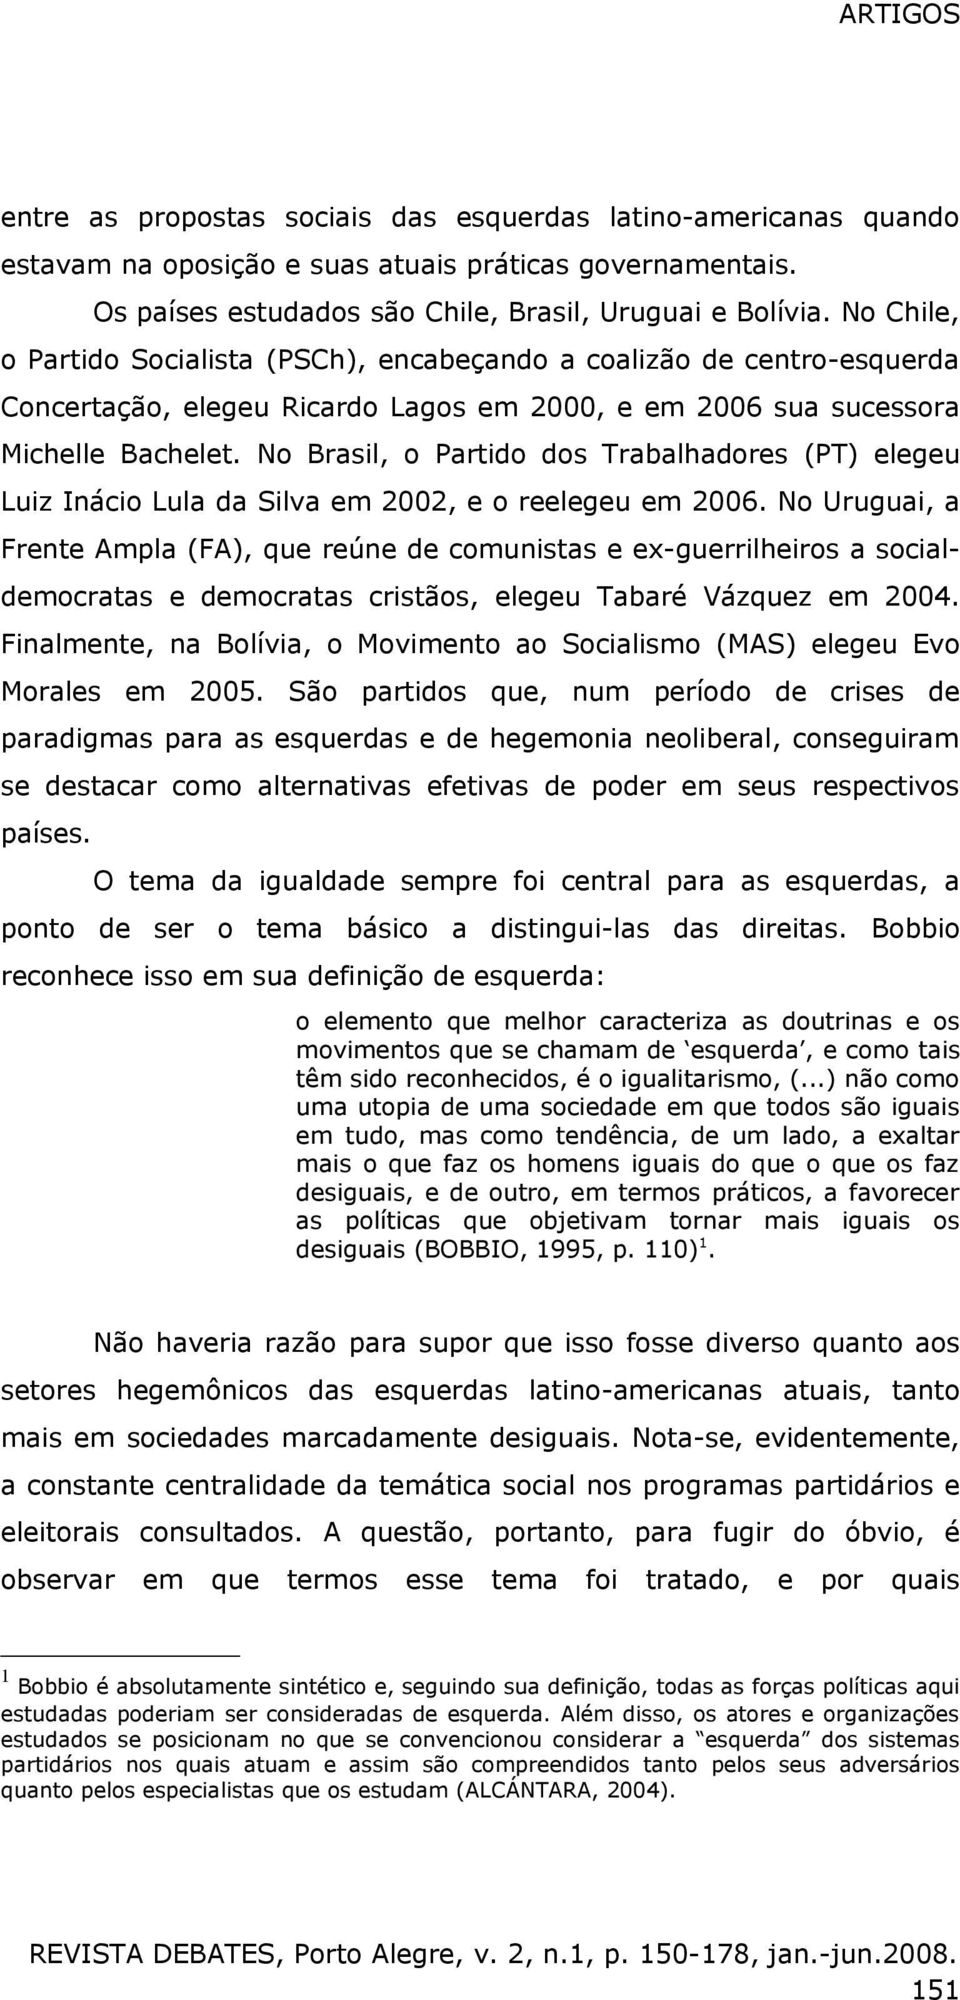 No Brasil, o Partido dos Trabalhadores (PT) elegeu Luiz Inácio Lula da Silva em 2002, e o reelegeu em 2006.